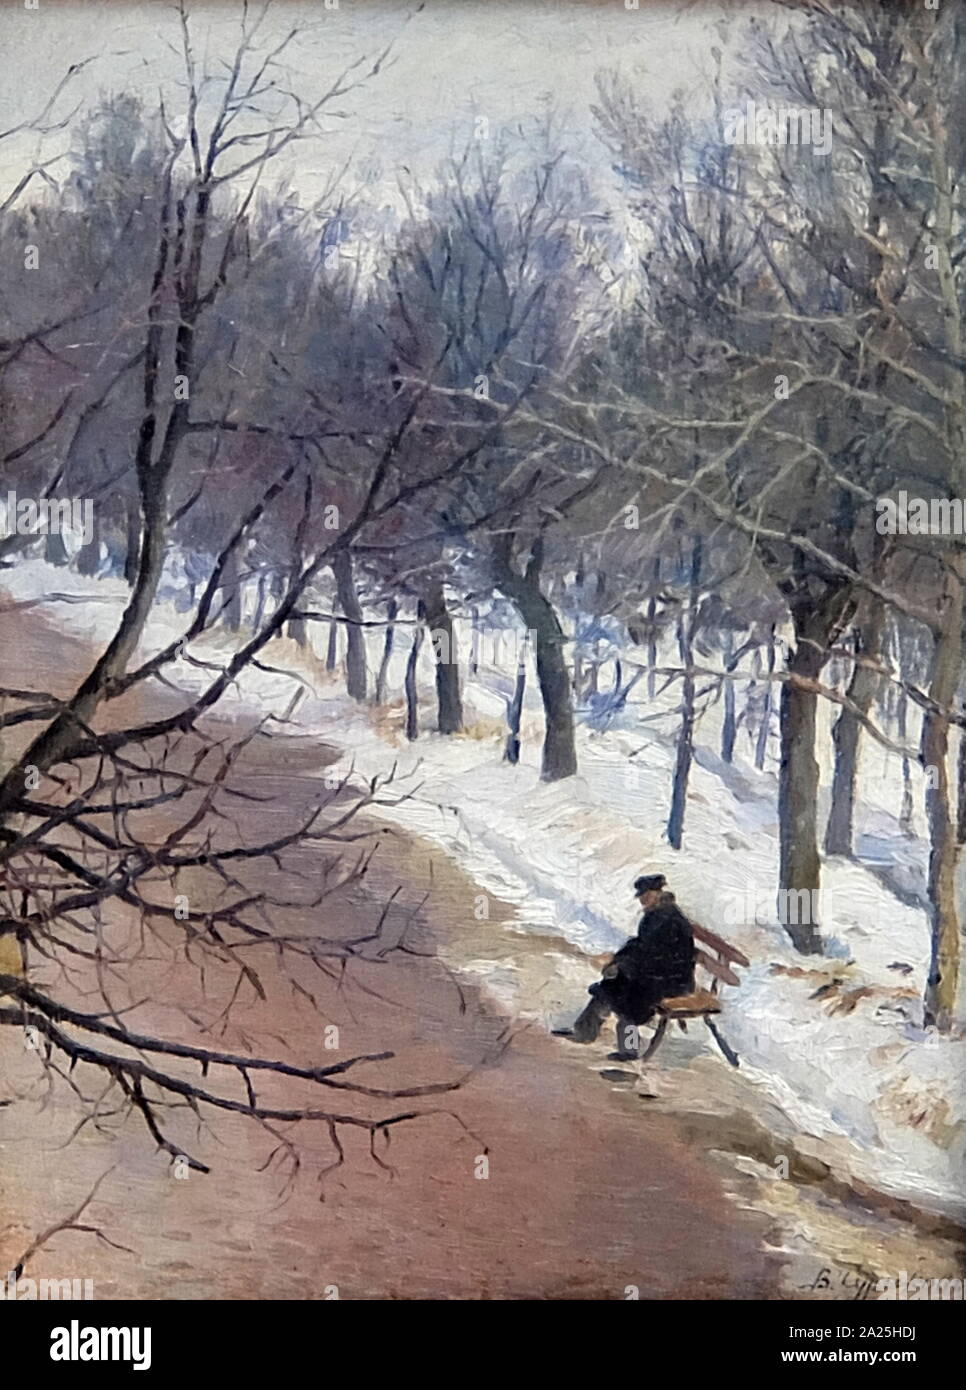 Gemälde mit dem Titel "zubovsky Boulevard" von Wassili Surikow. Wassili Iwanowitsch Surikow (1848-1916) ein russischer Realist Historienmaler. Stockfoto